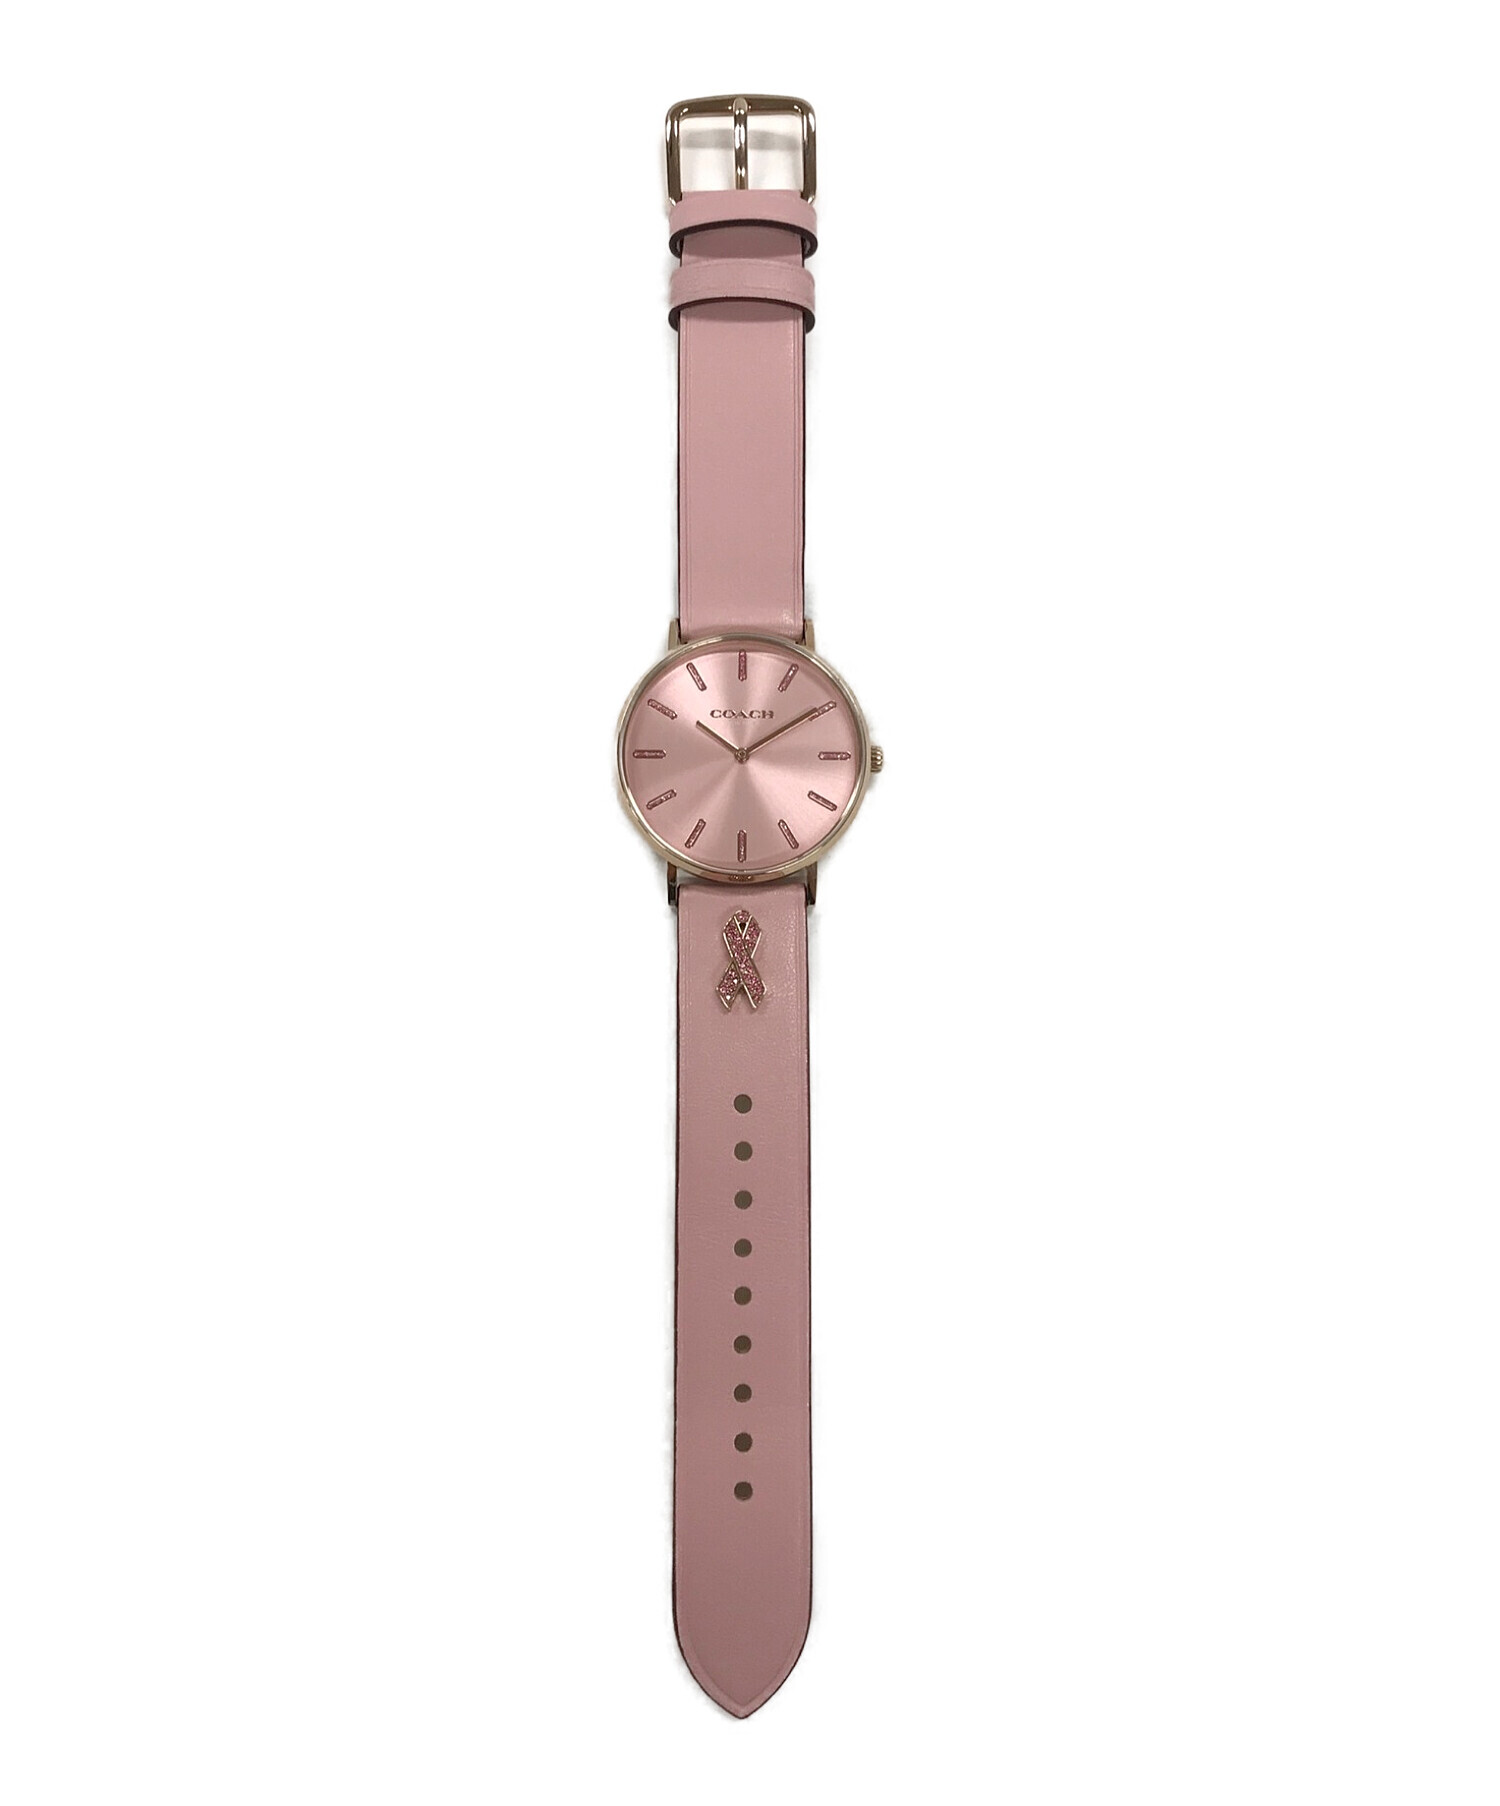 中古・古着通販】COACH (コーチ) リストウォッチ 腕時計 ピンク サイズ 